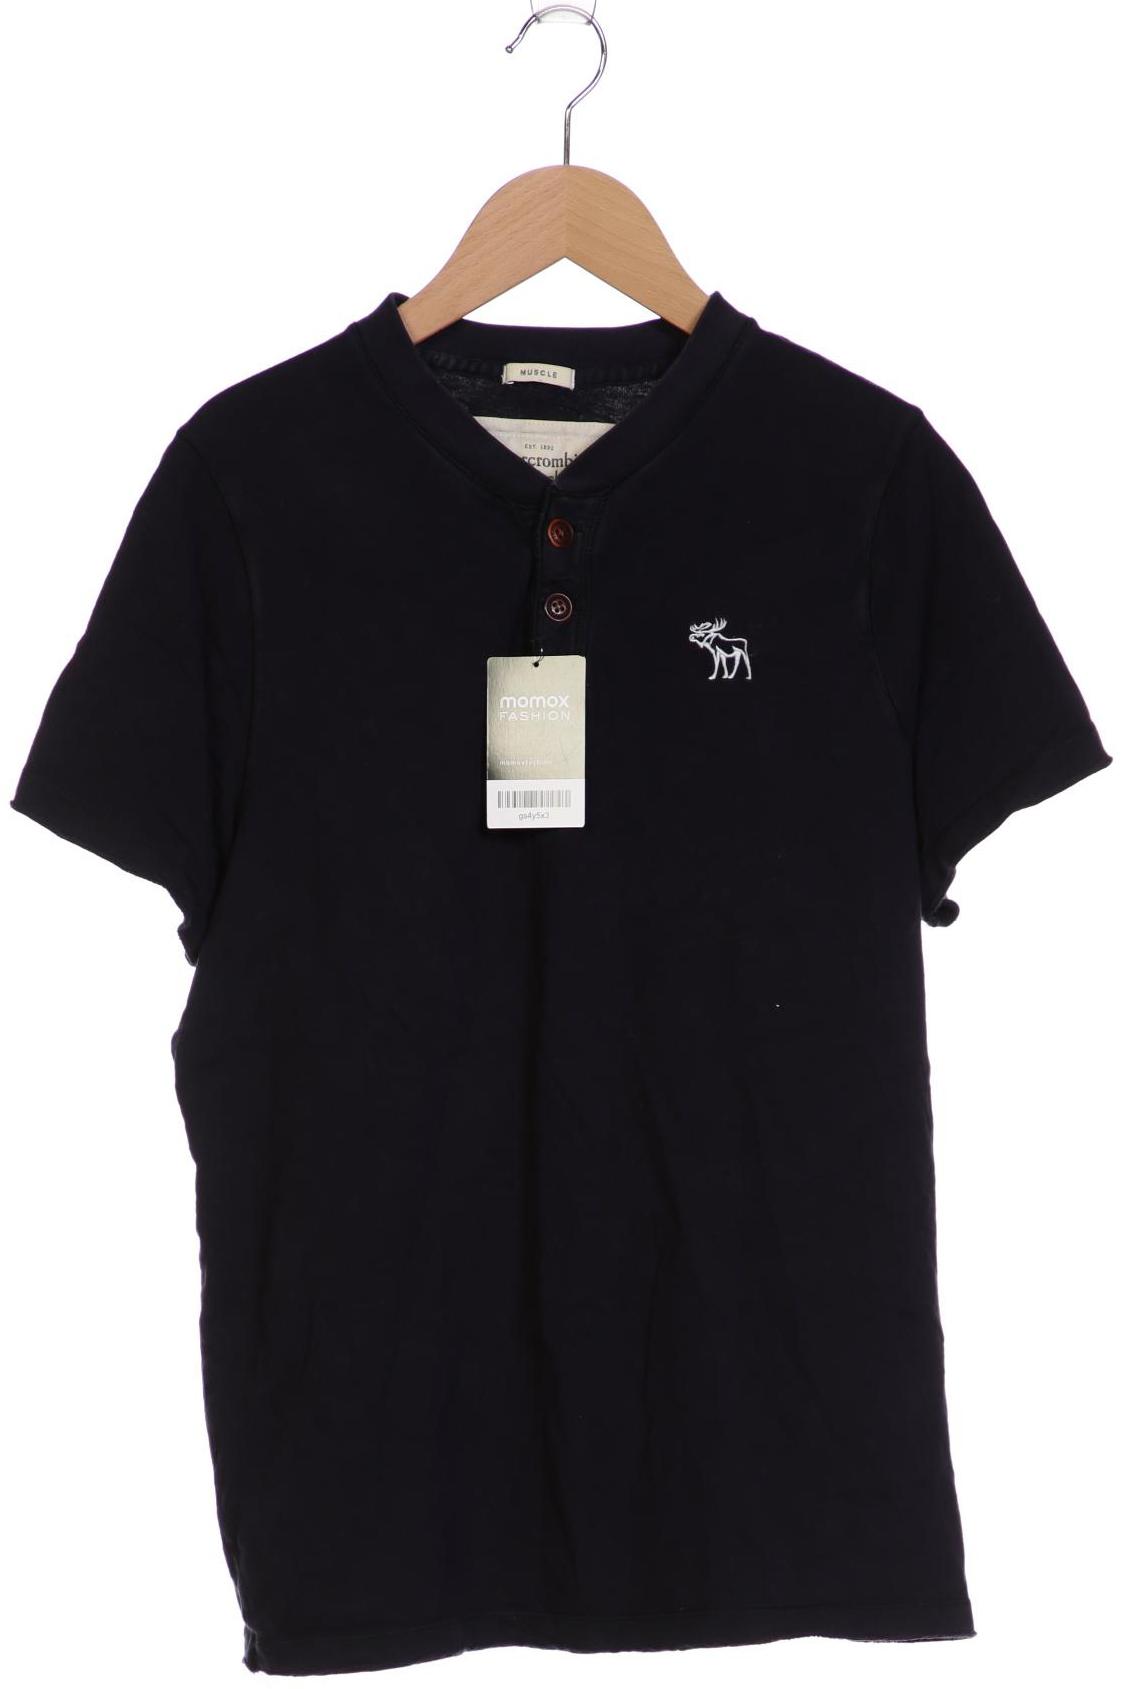 Abercrombie & Fitch Herren T-Shirt, marineblau, Gr. 54 von Abercrombie & Fitch